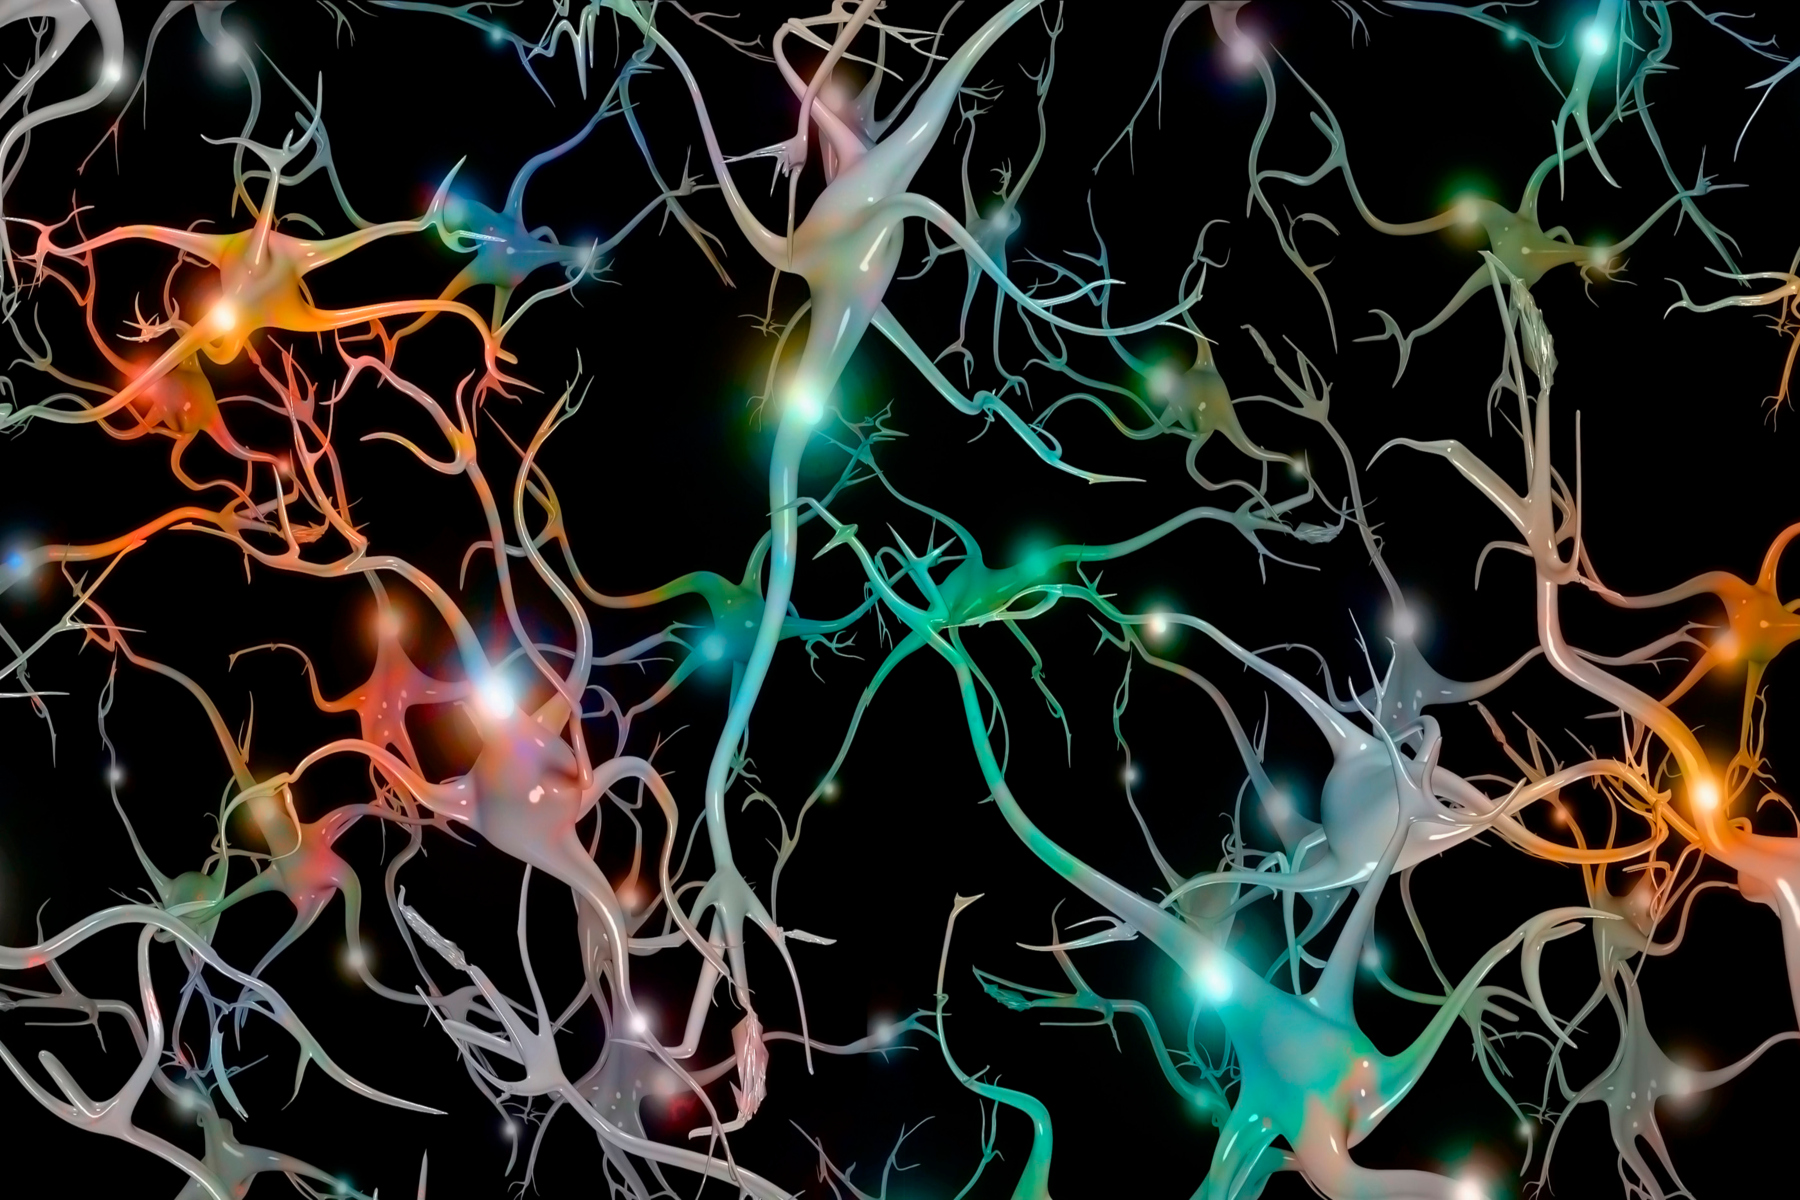 Τεχνολογία: Οι ερευνητές δημιουργούν τα πιο ρεαλιστικά μοντέλα υπολογιστών εγκεφαλικών κυττάρων